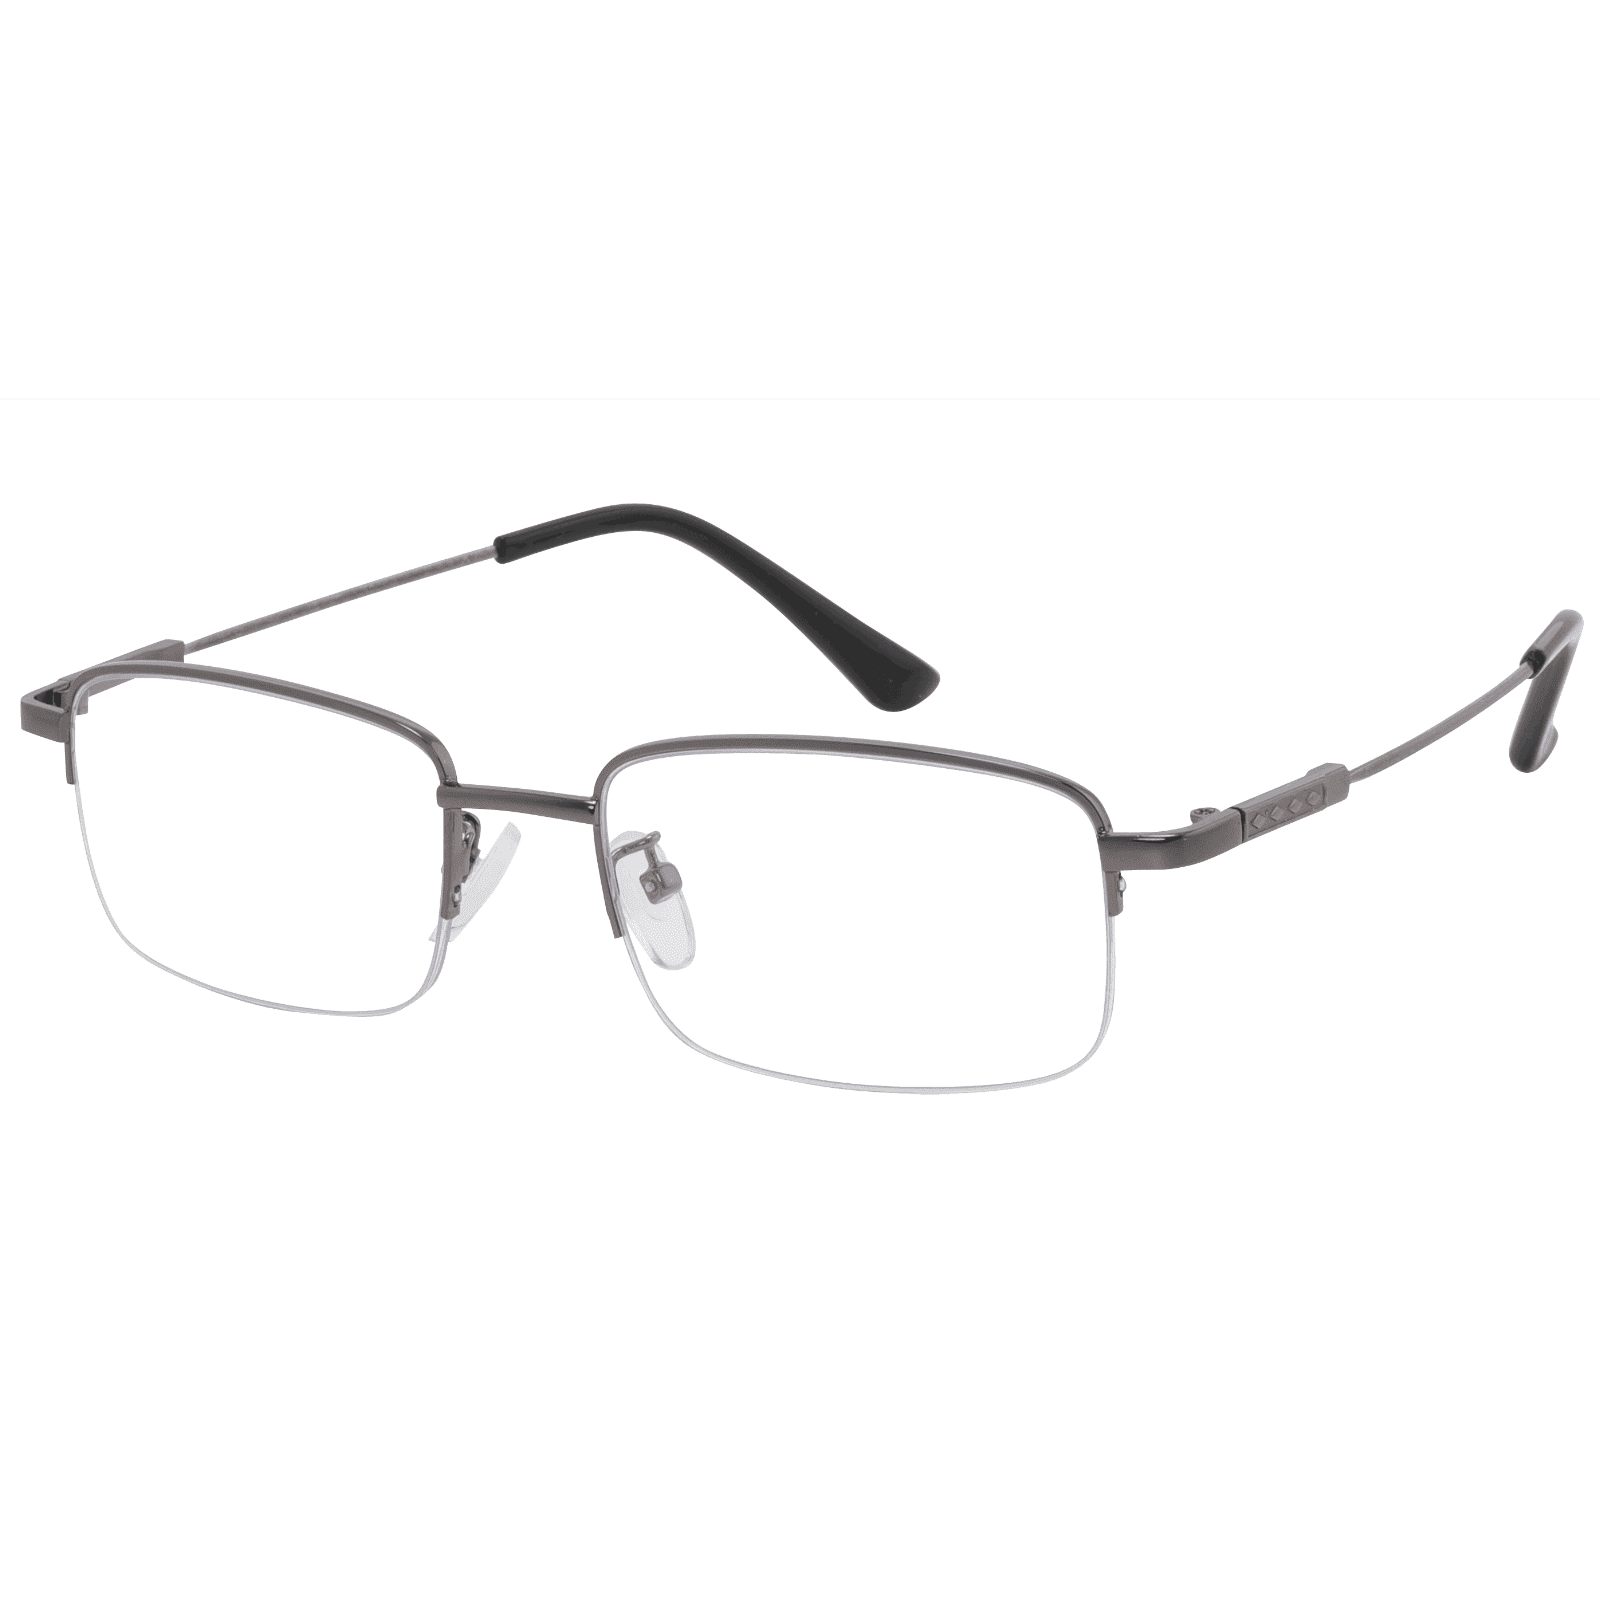 Aenus - Rectangle Gray Reading Glasses for Men & Women